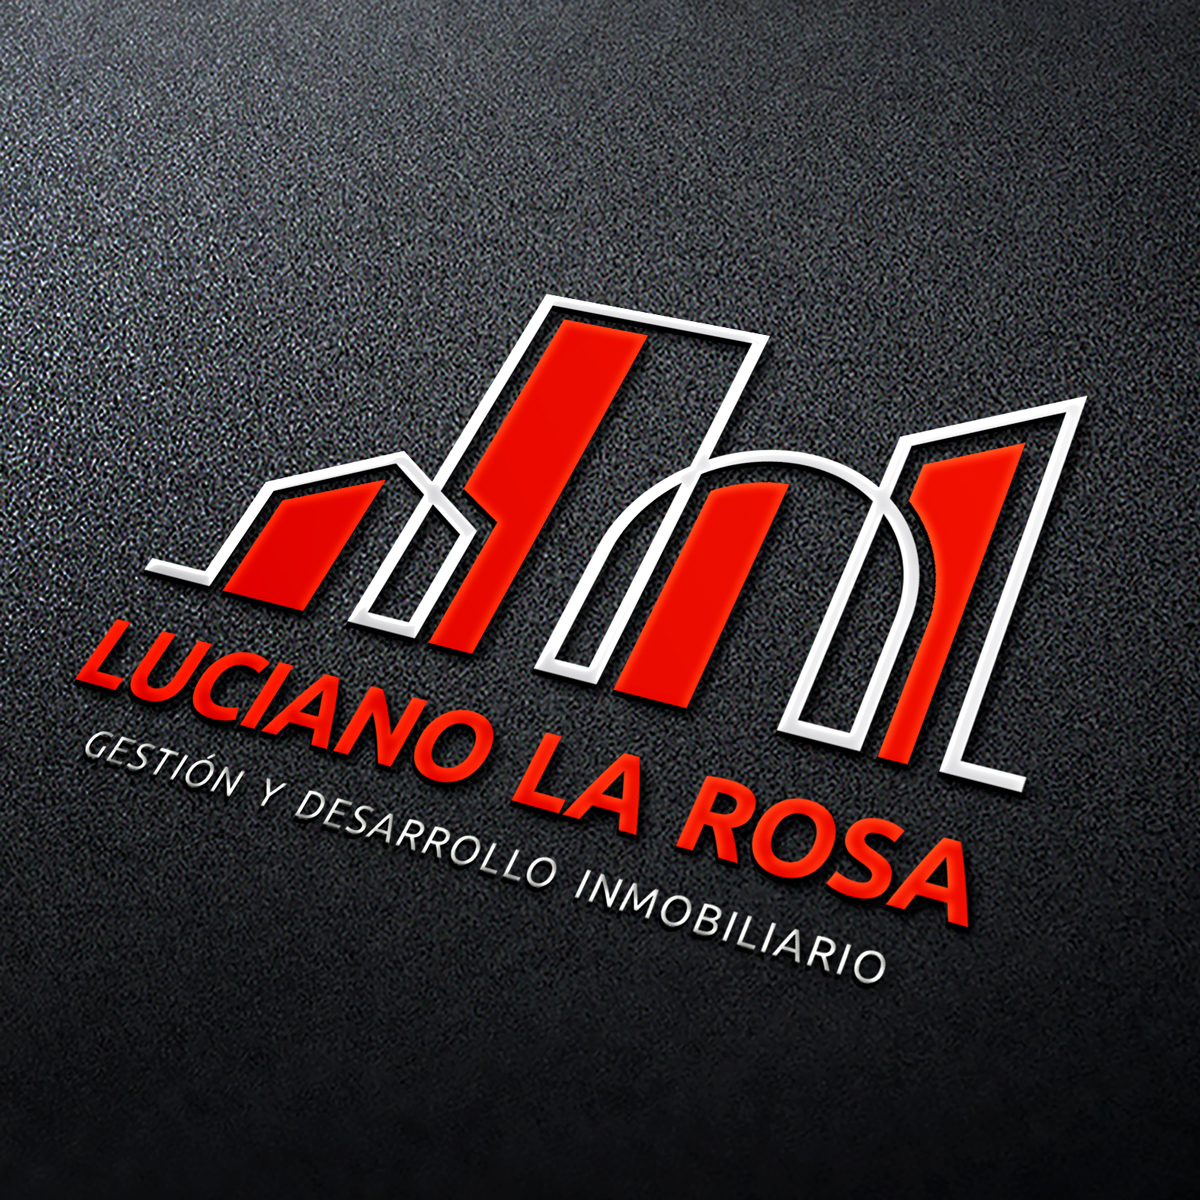 Diseño de Marca Luciano La Rosa - Gestión y Desarrollo Inmobiliario